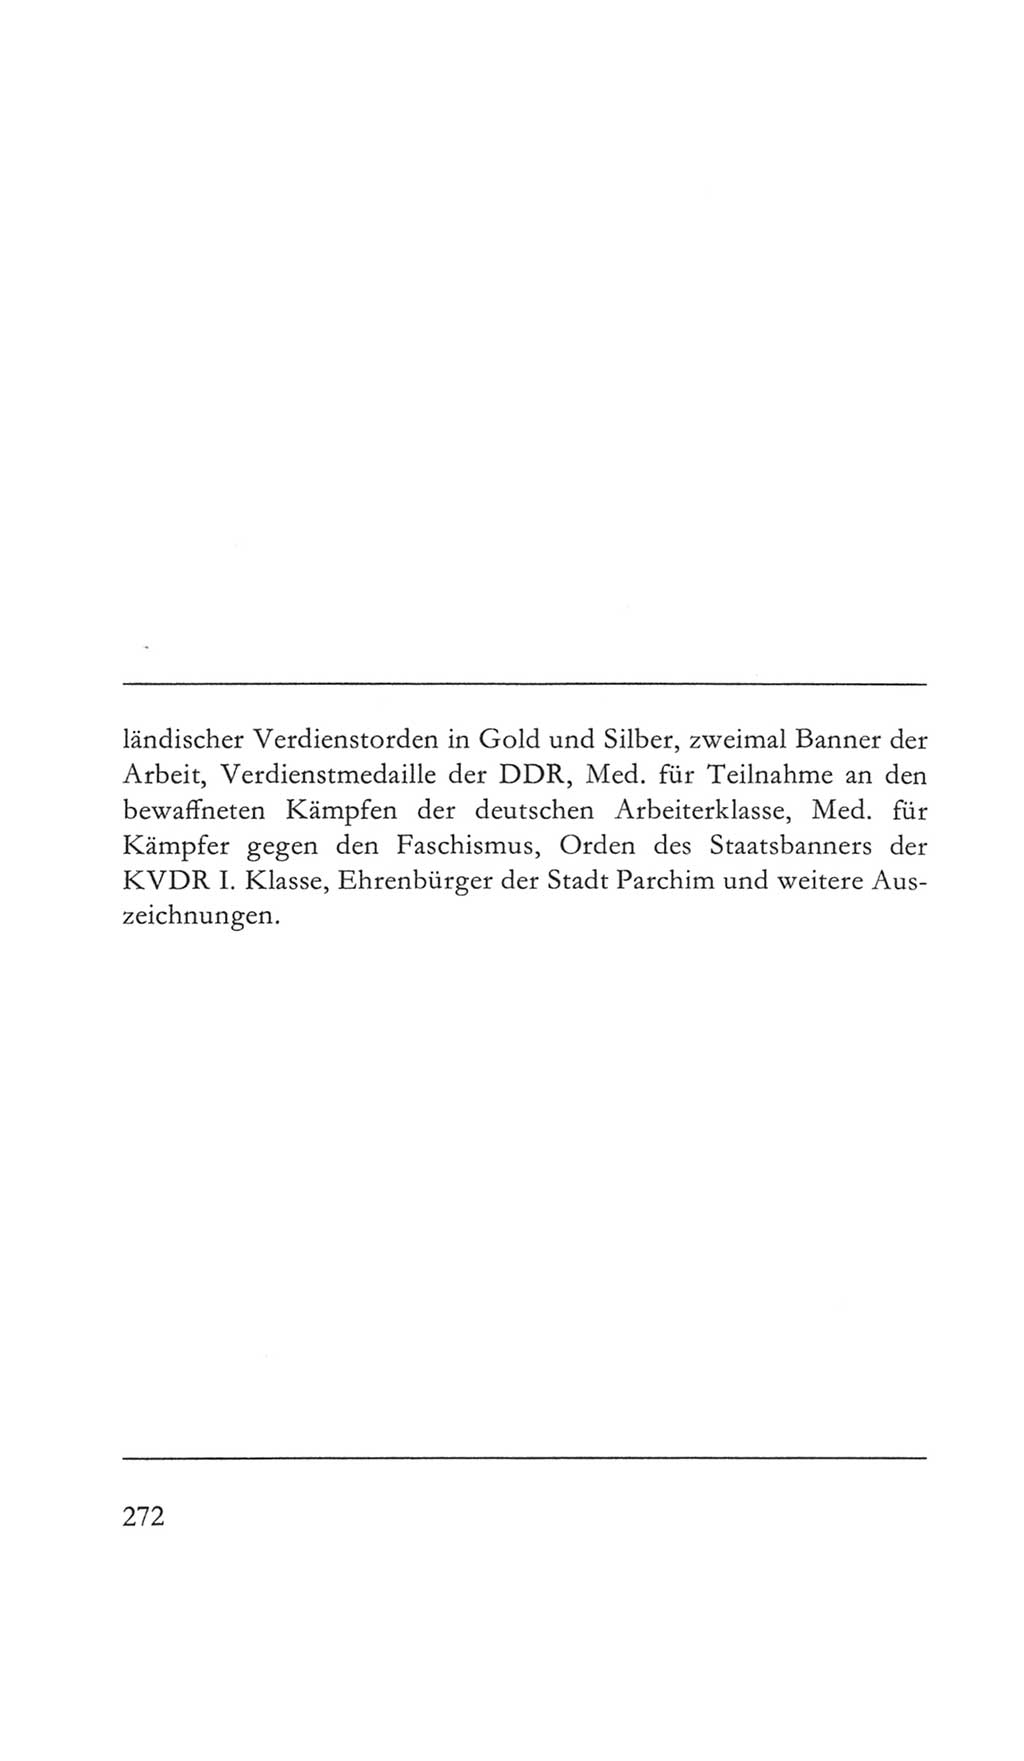 Volkskammer (VK) der Deutschen Demokratischen Republik (DDR) 5. Wahlperiode 1967-1971, Seite 272 (VK. DDR 5. WP. 1967-1971, S. 272)